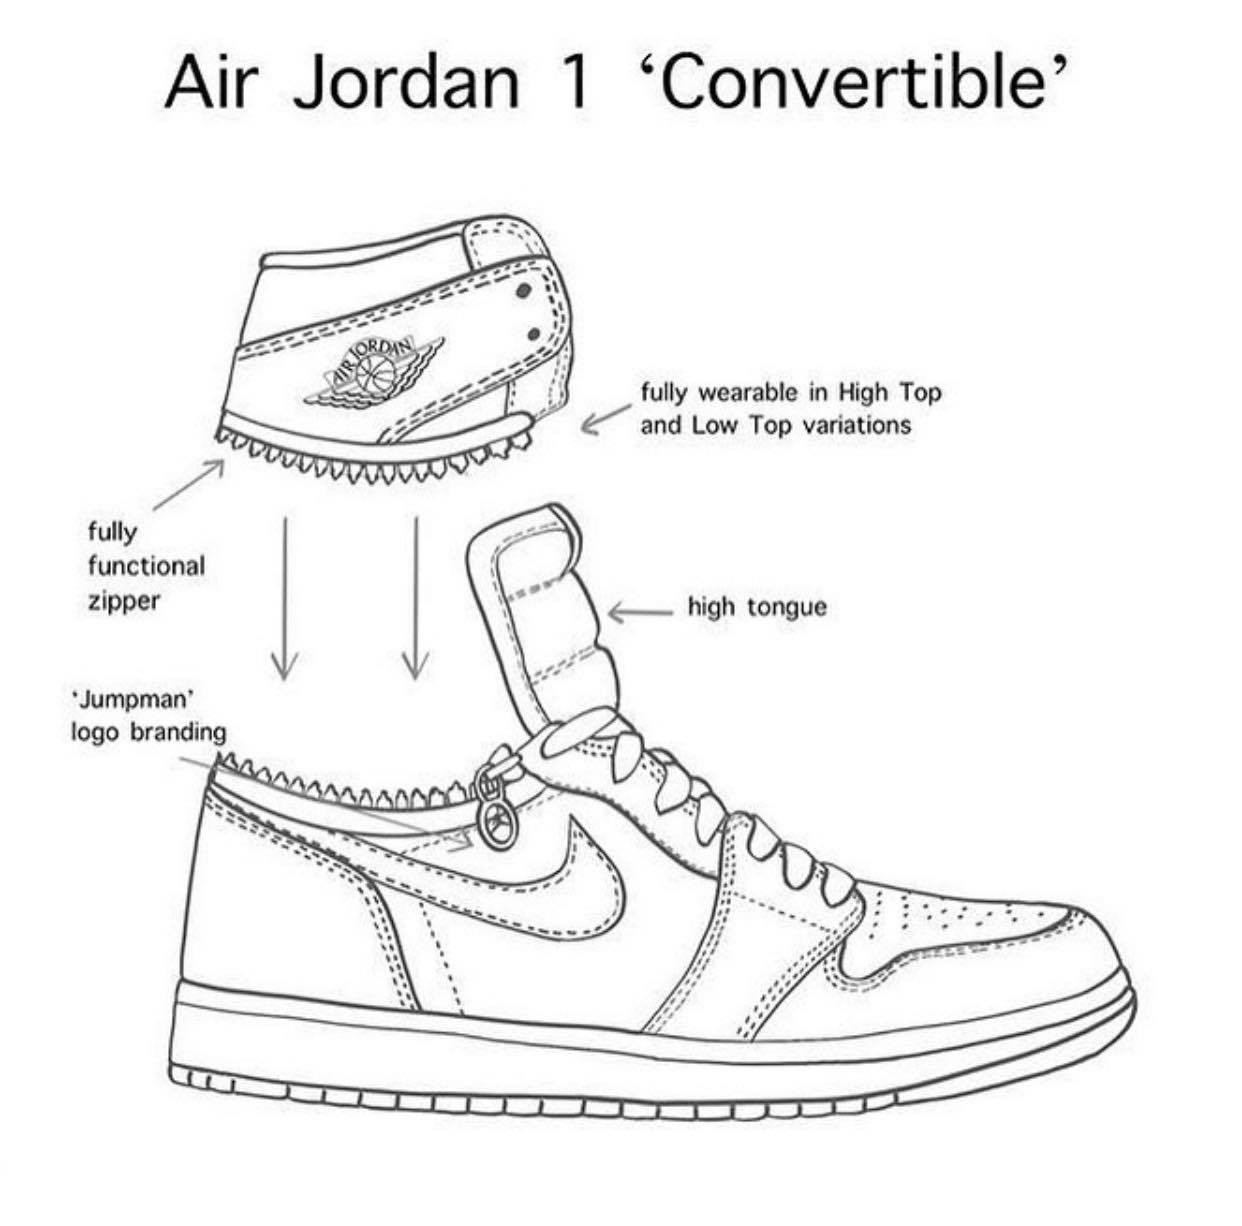 Nếu bạn là một fan hâm mộ của thương hiệu giày thể thao nổi tiếng Jordan, bạn không thể bỏ qua đôi giày Jordan